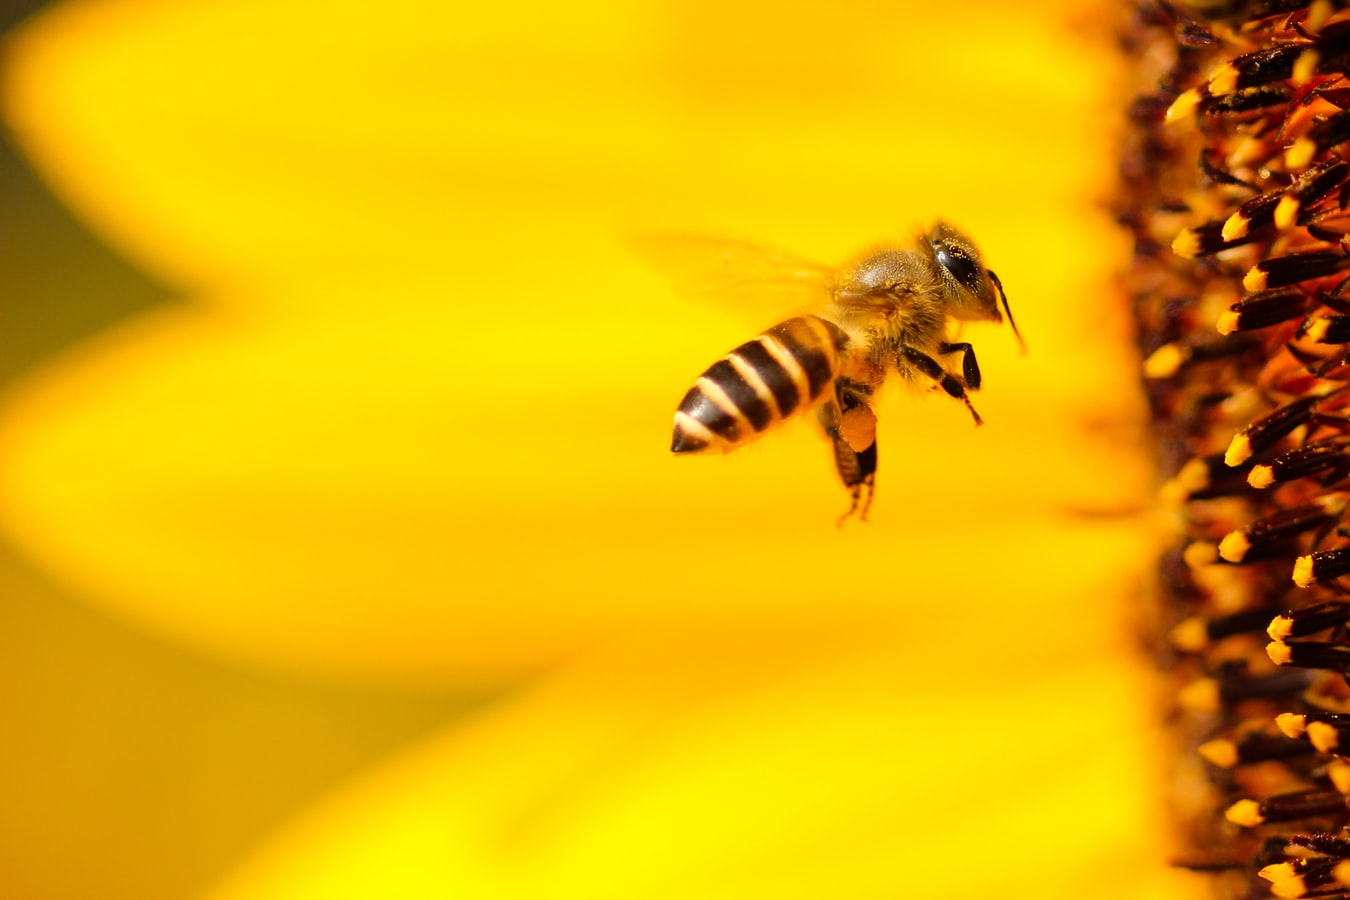  Repense BandNews: por que precisamos tanto das abelhas?